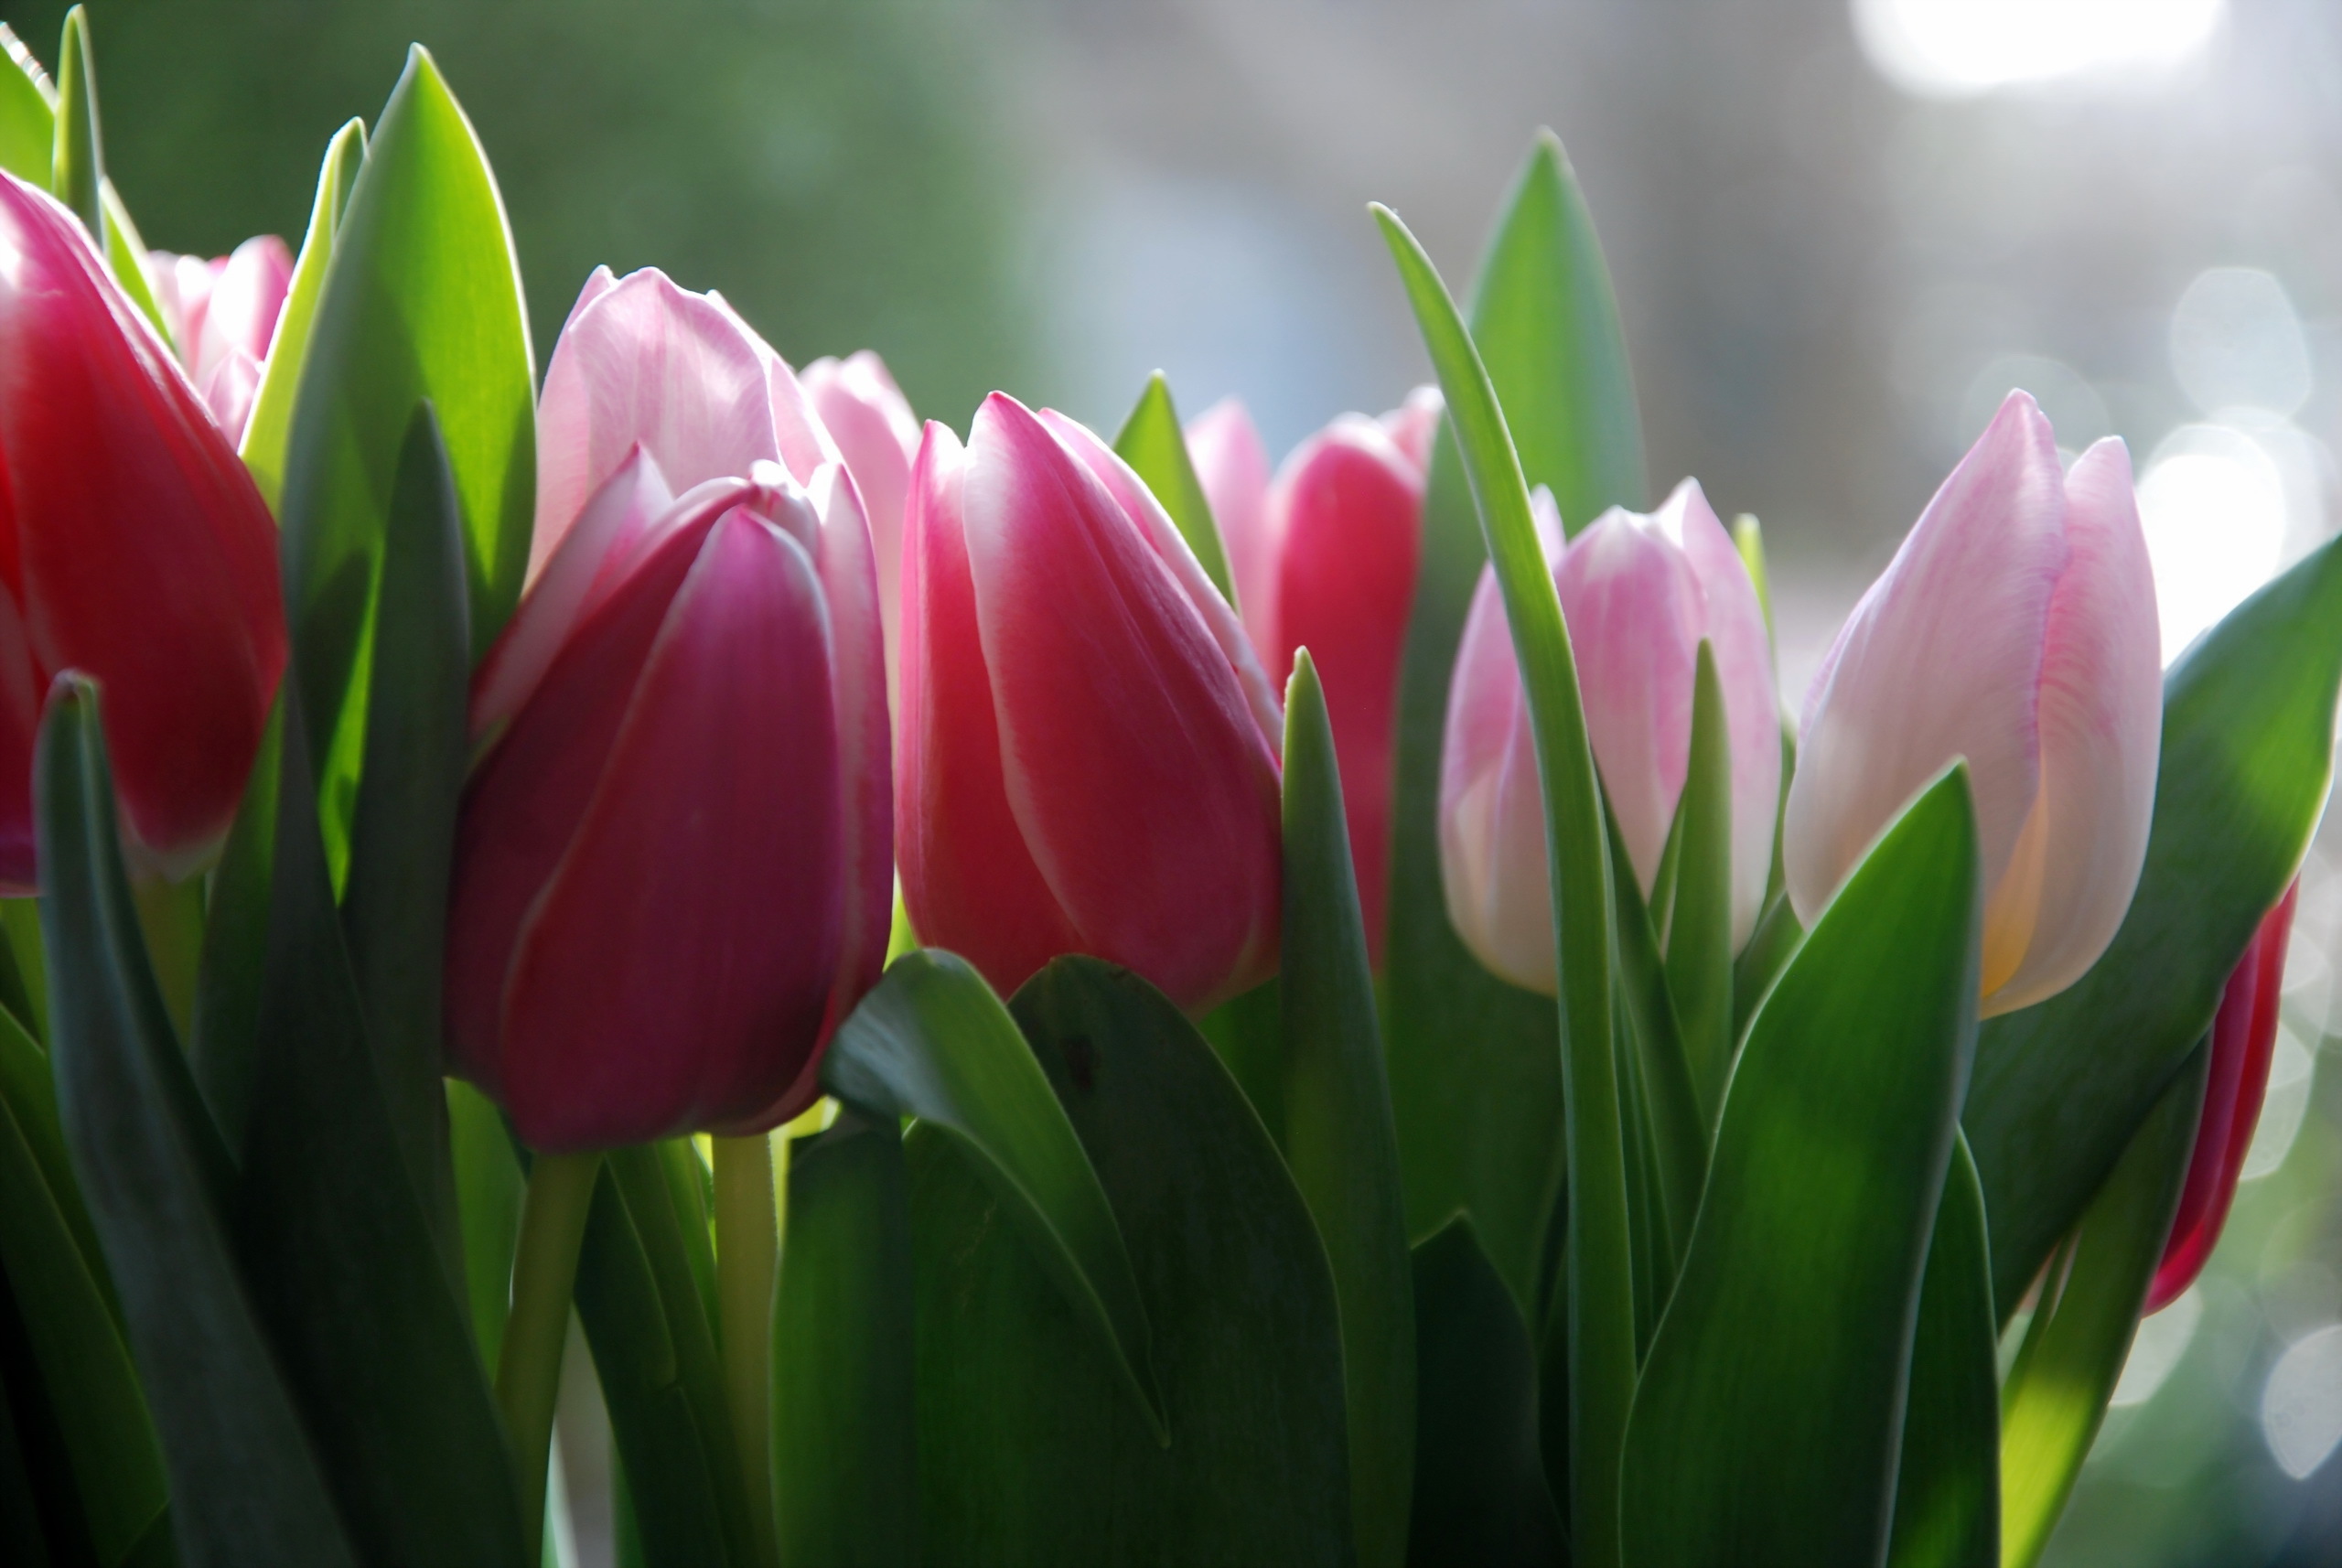 Обои на телефон красивые тюльпаны. Цветы тюльпаны. Красивые тюльпаны. Весенние тюльпаны.